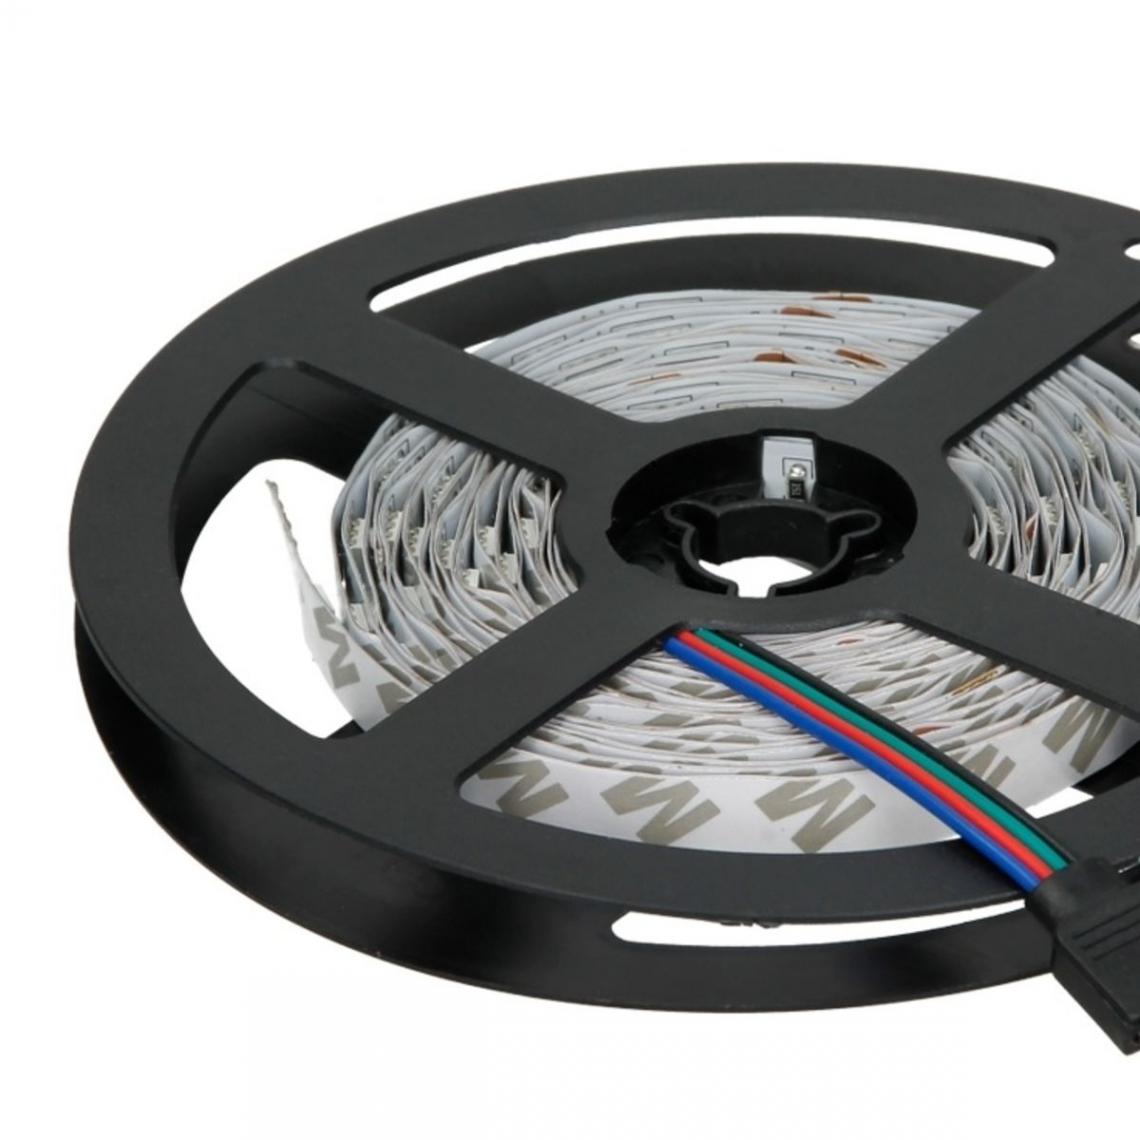 Ecd Germany - Bandes LED de 2 m, RGB - 30 LED par mètre - Ruban LED